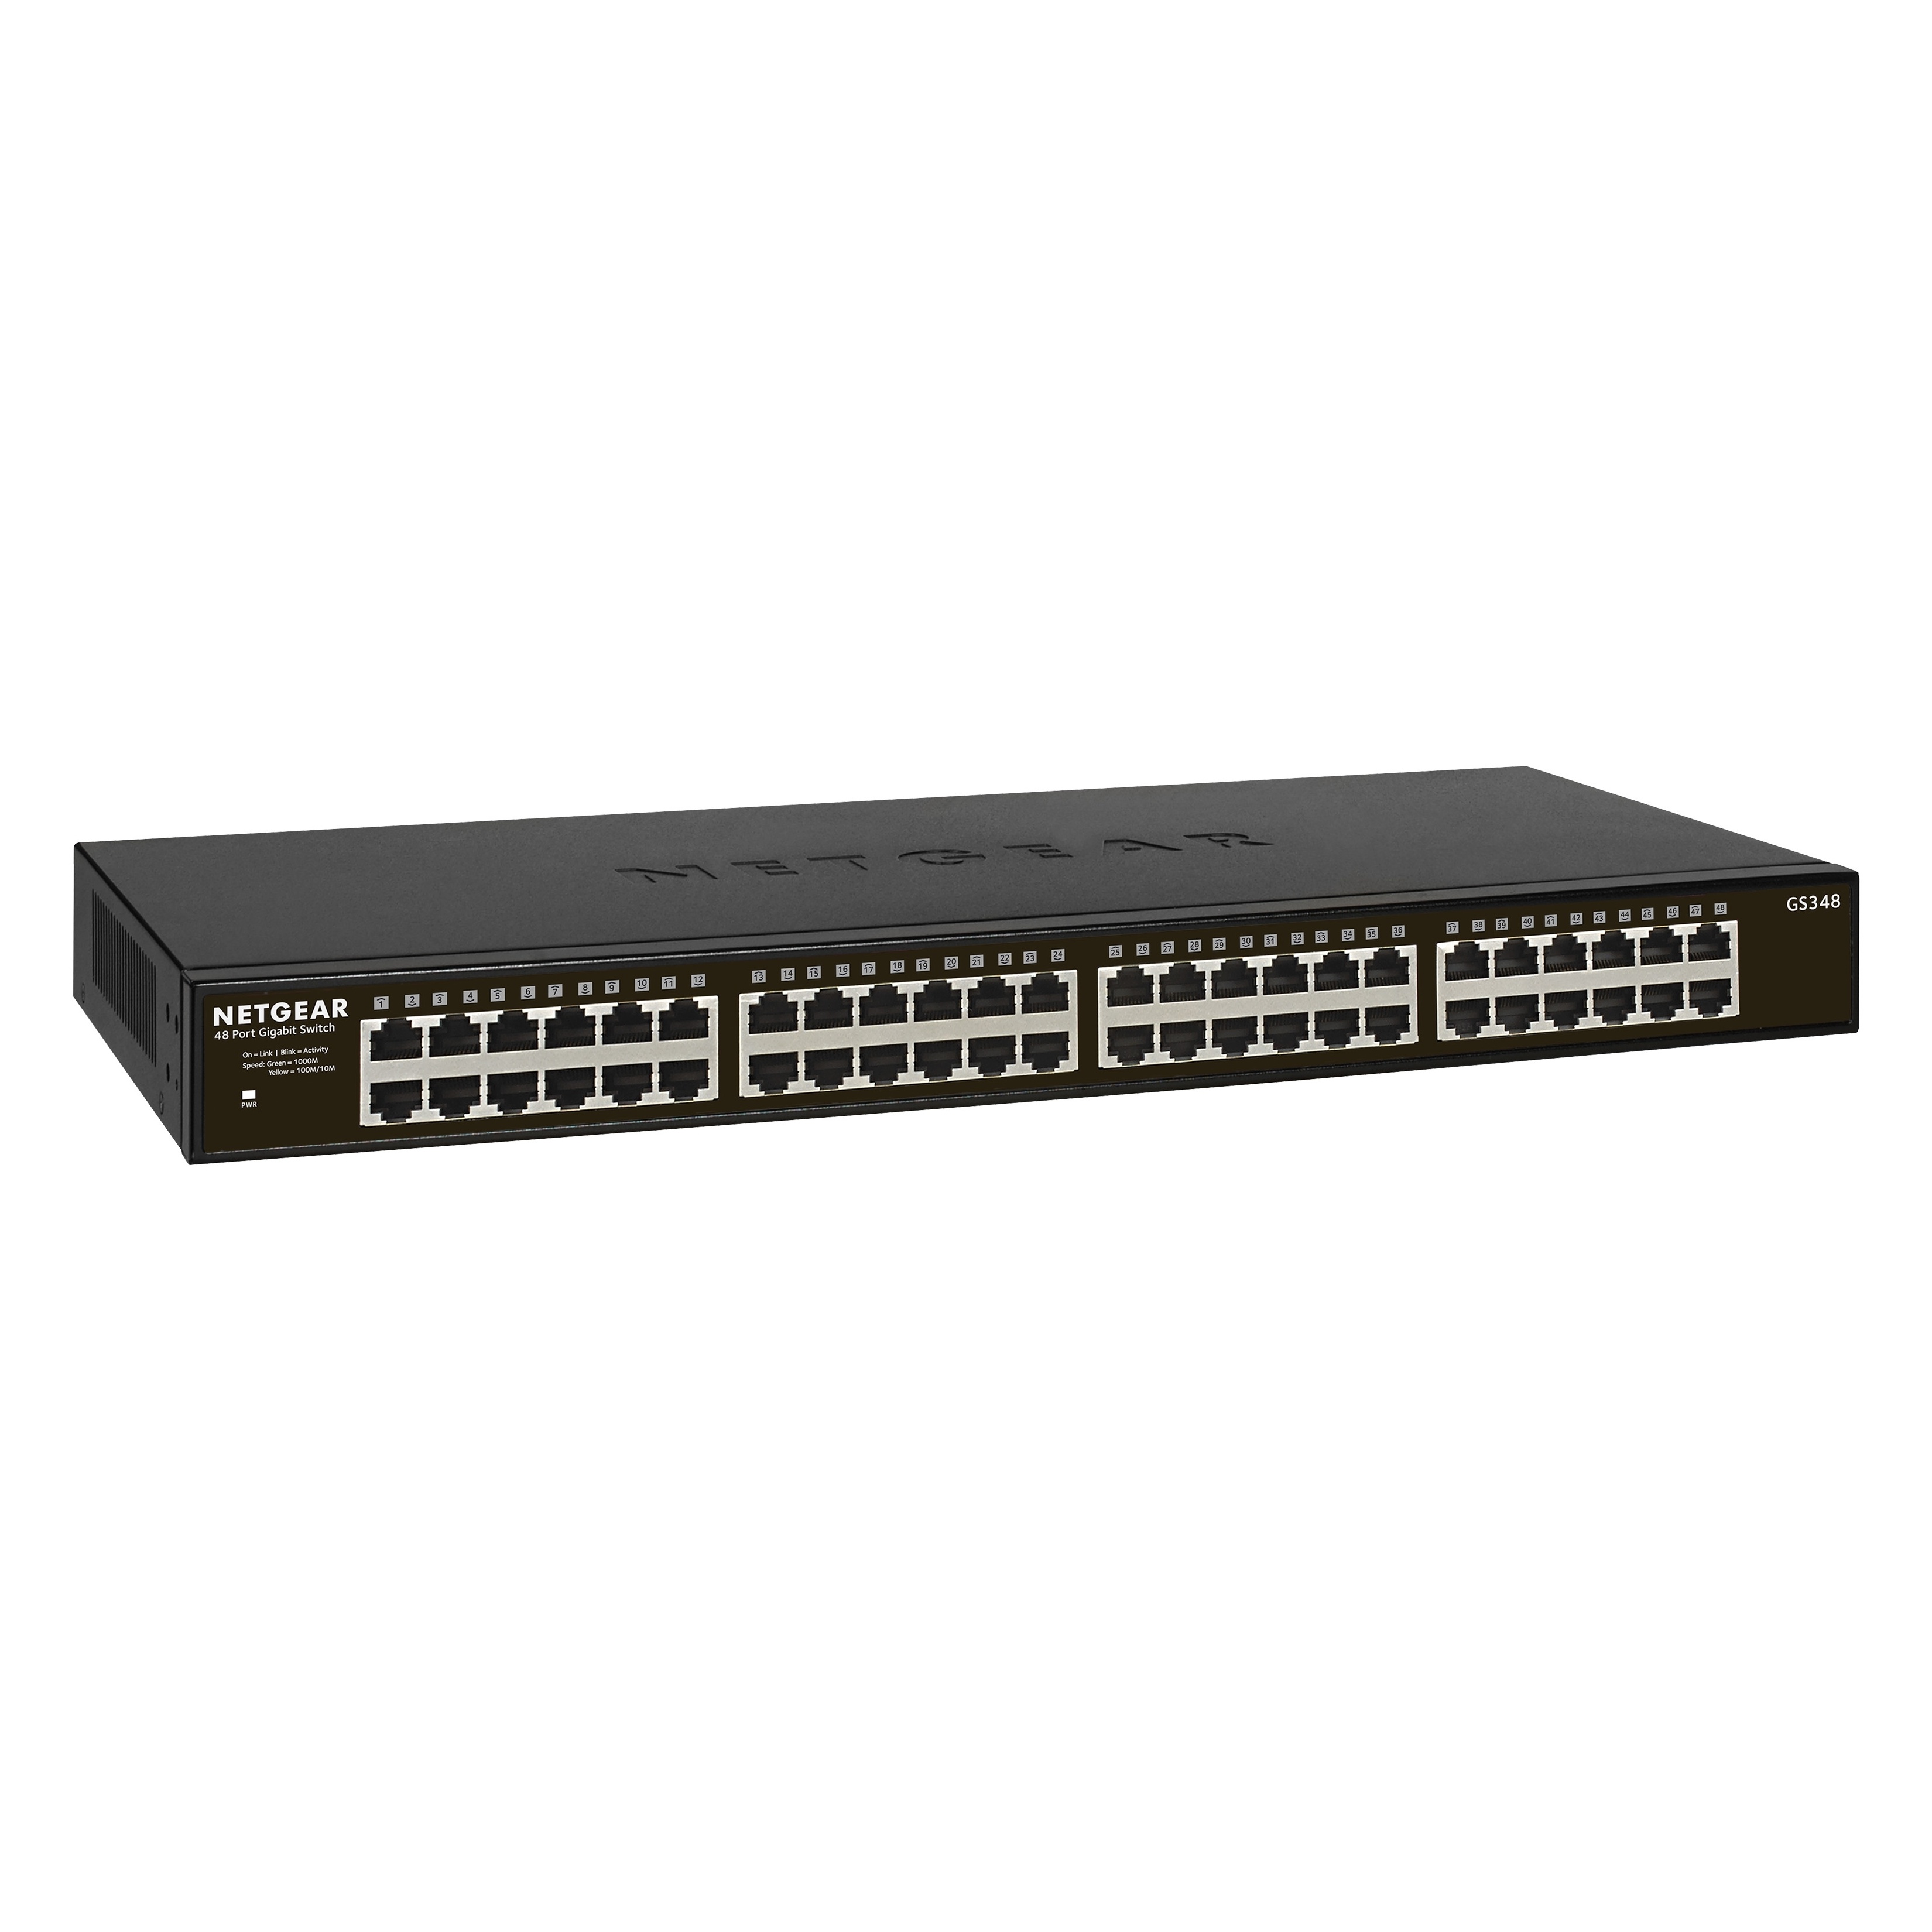 Bild von SOHO GS300 Rackmount Gigabit Ethernet (10/100/1000) Schwarz